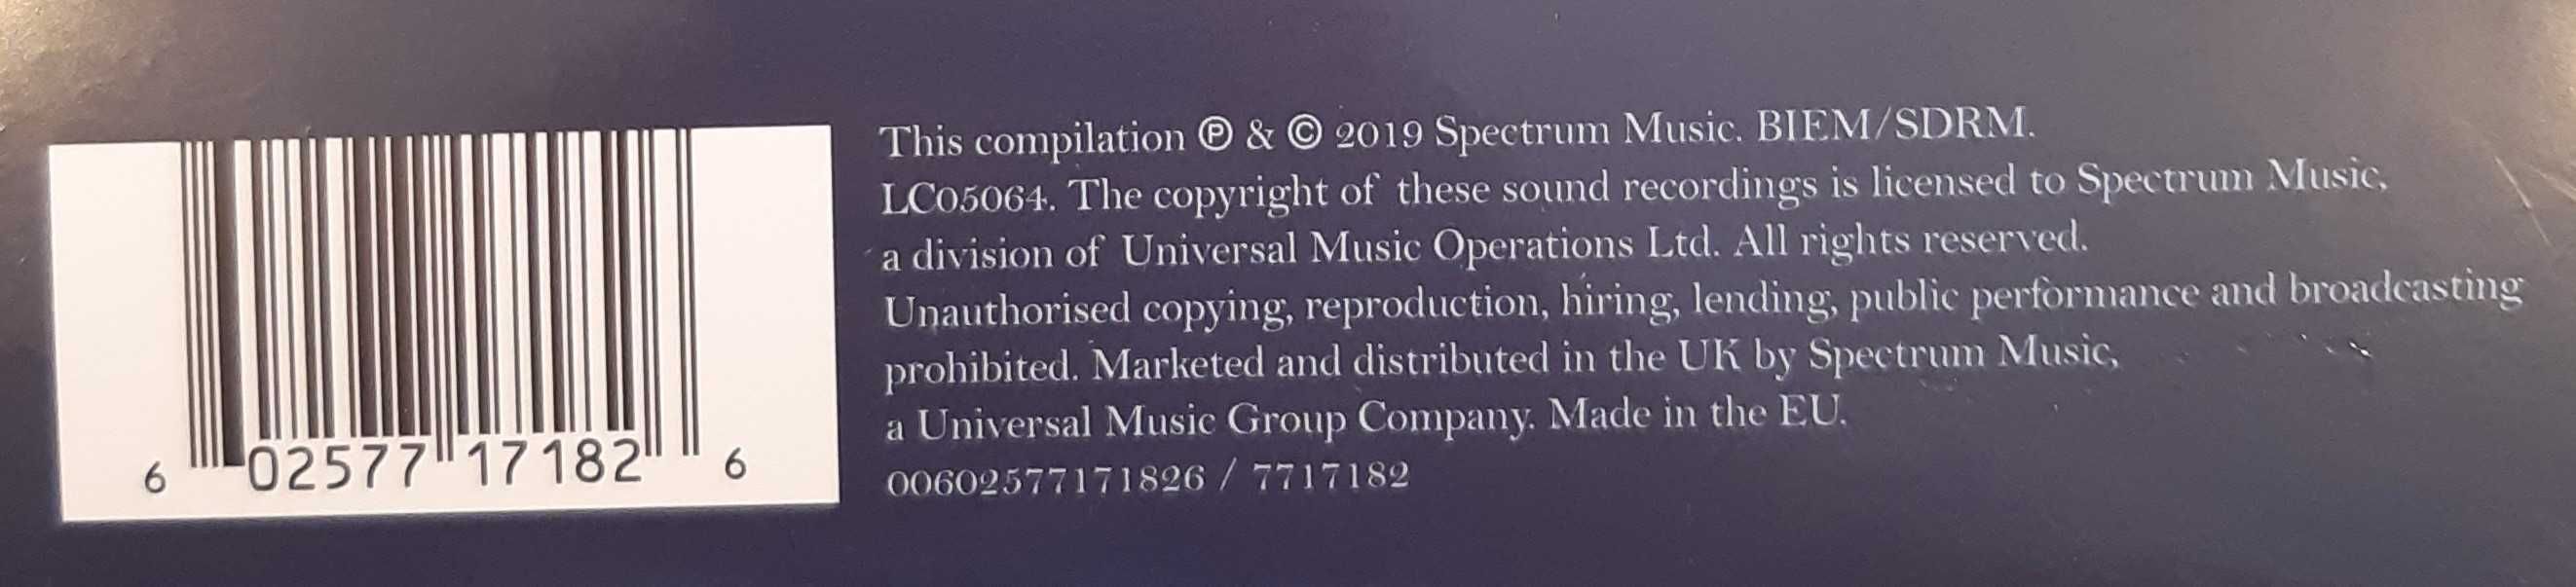 Mike Oldfield Moonlight Shadow LP 2019 Winyl Vinyl nowa w folii